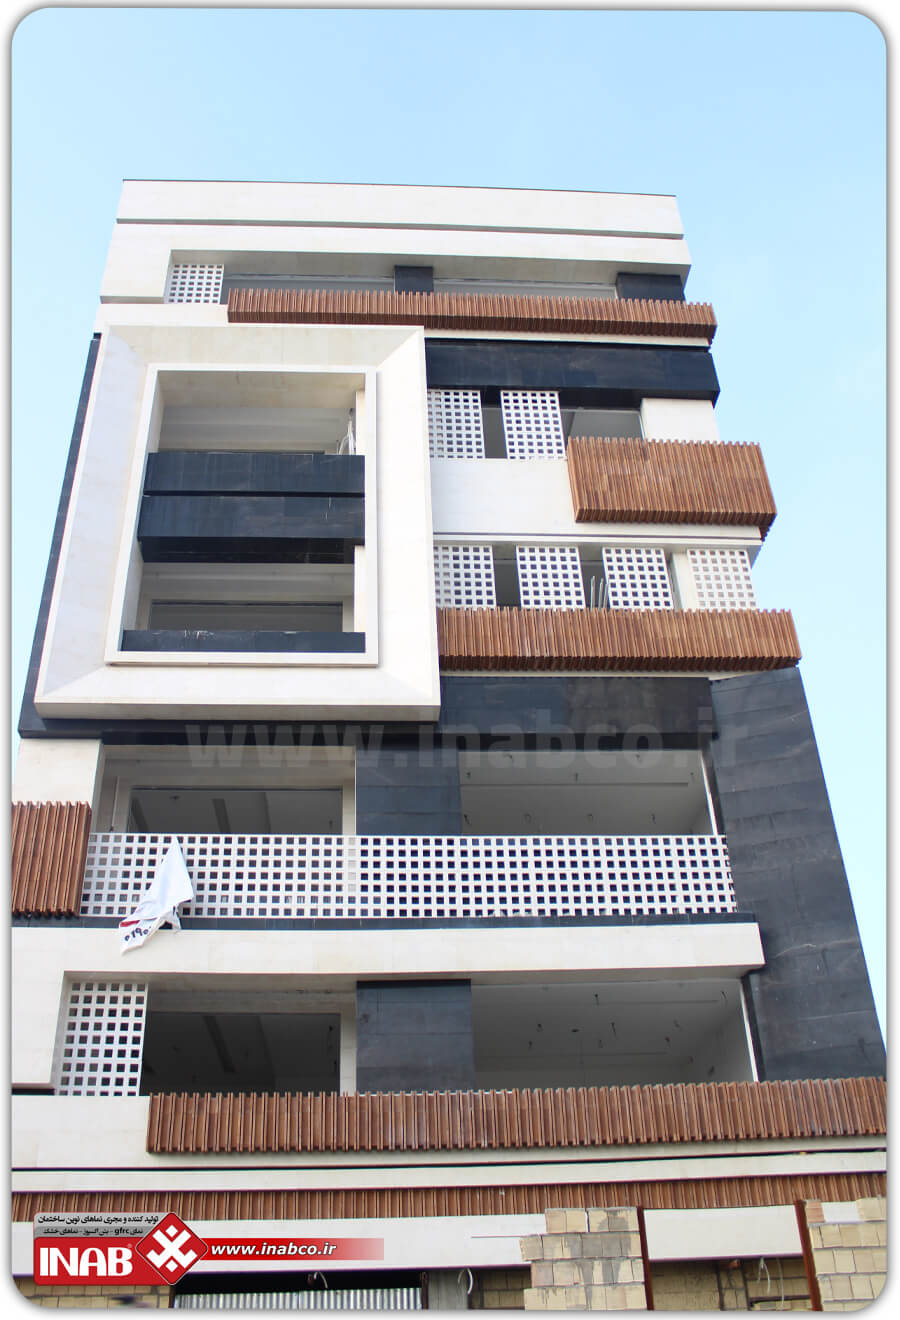 نمای مدرن - ساختمان 5 طبقه - نمای ساختمان مسکونی - نمای خاص ساختمان - جی اف ار سی